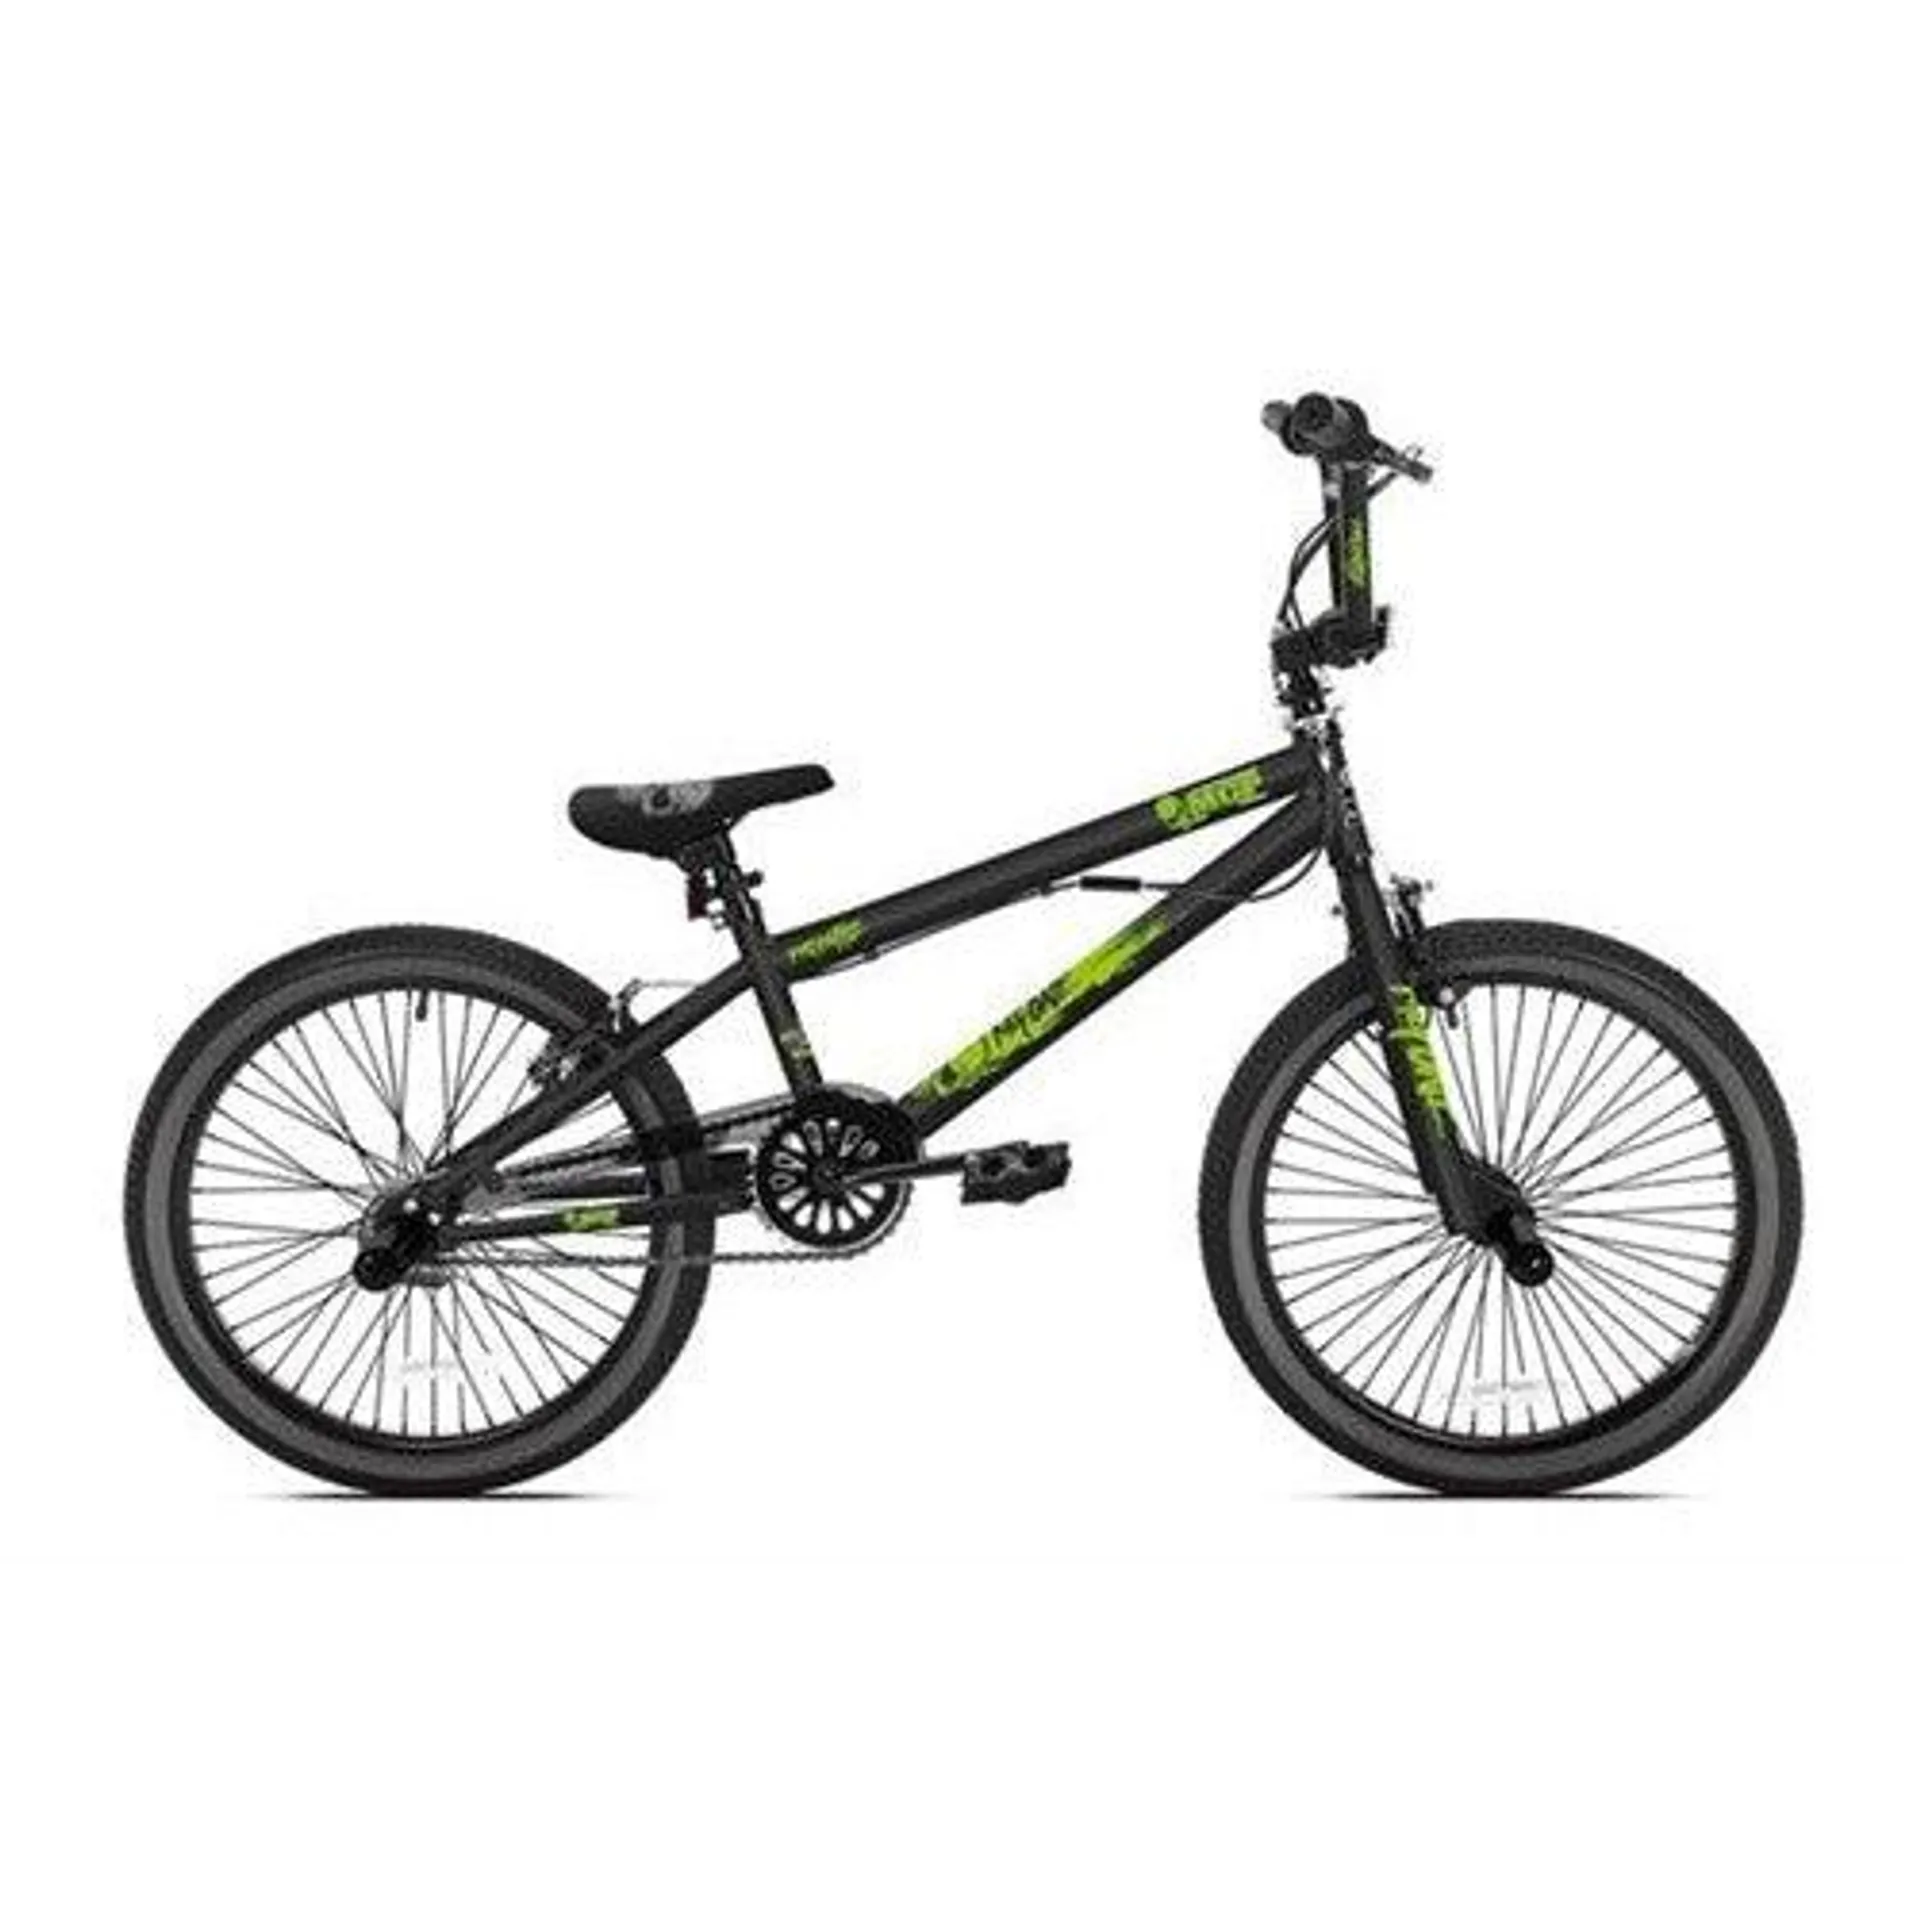 Madd 20 inch freestyle bmx fiets zwart groen (12522)